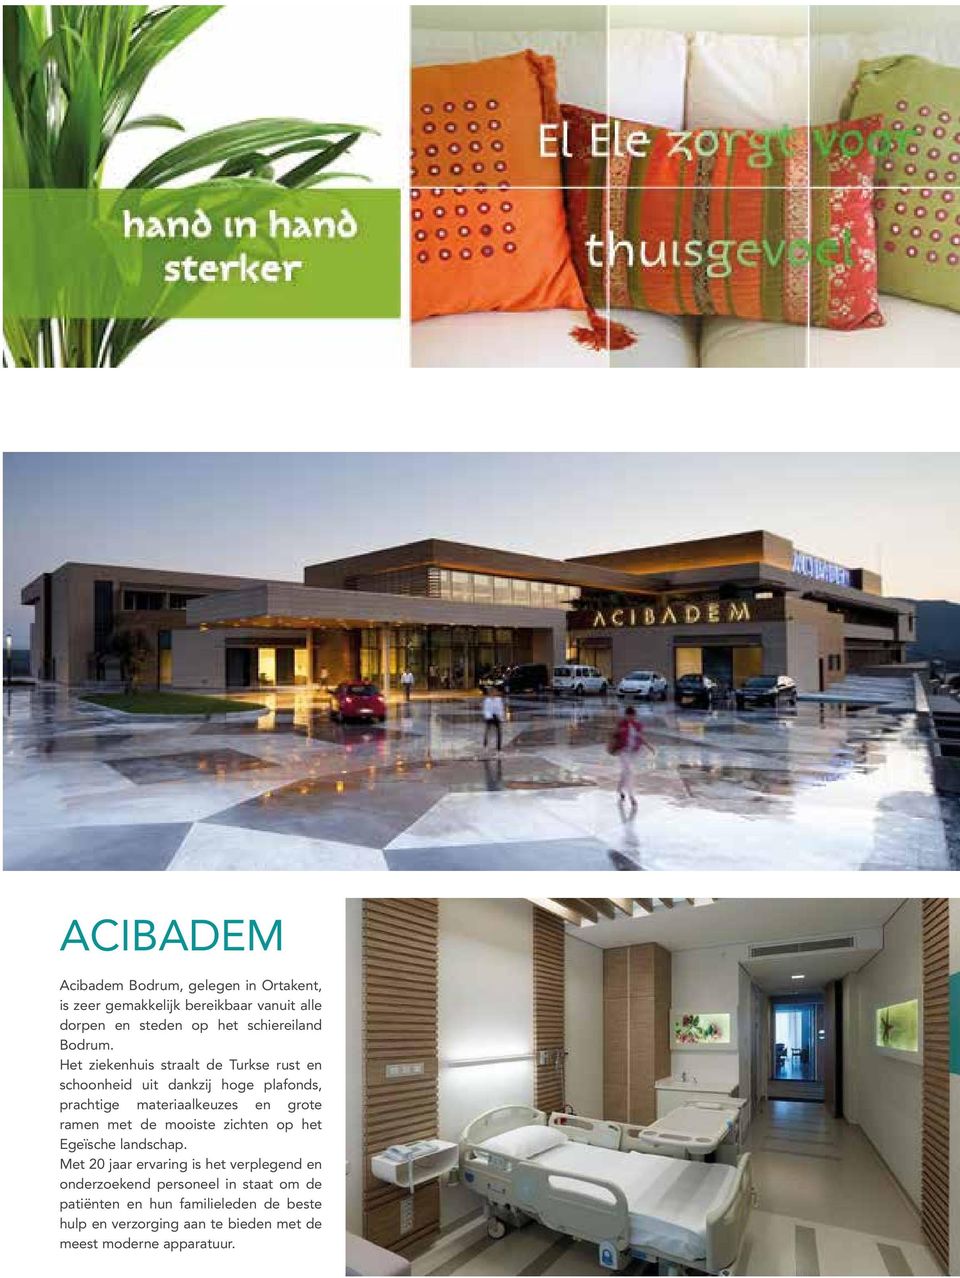 Het ziekenhuis straalt de Turkse rust en schoonheid uit dankzij hoge plafonds, prachtige materiaalkeuzes en grote ramen